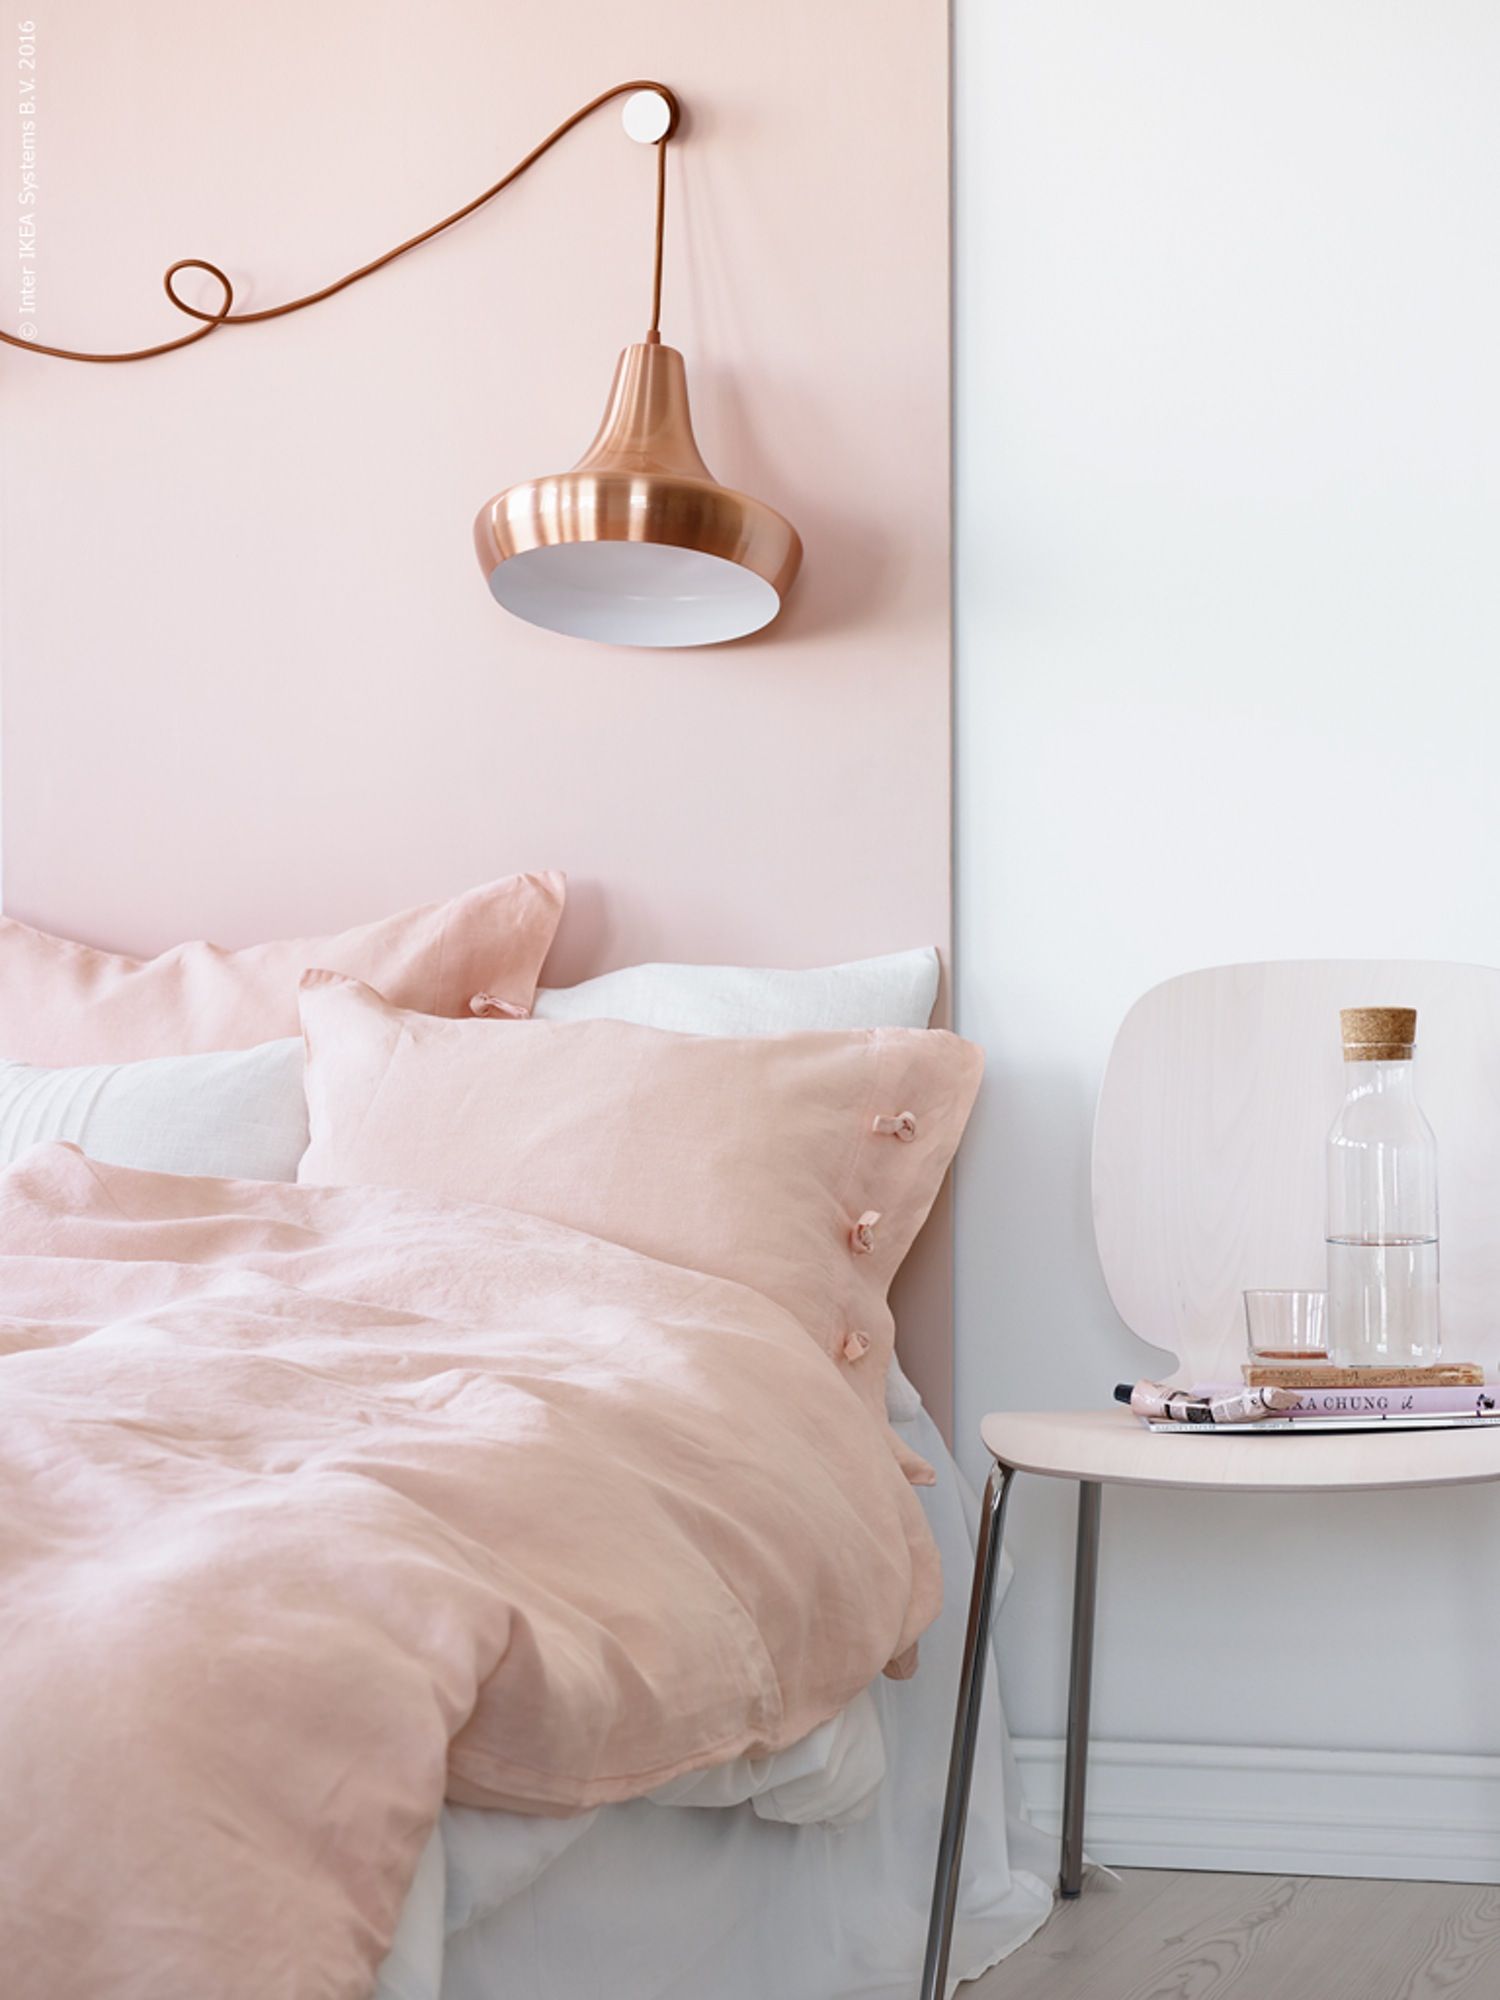 Tường phòng ngủ được phối hợp hai tông màu trắng và hồng để tạo cảm giác vừa nữ tính vừa sang trọng chứ không hề “sến”, thêm vào chiếc đèn ngủ màu vàng đồng duyên dáng vô cùng.